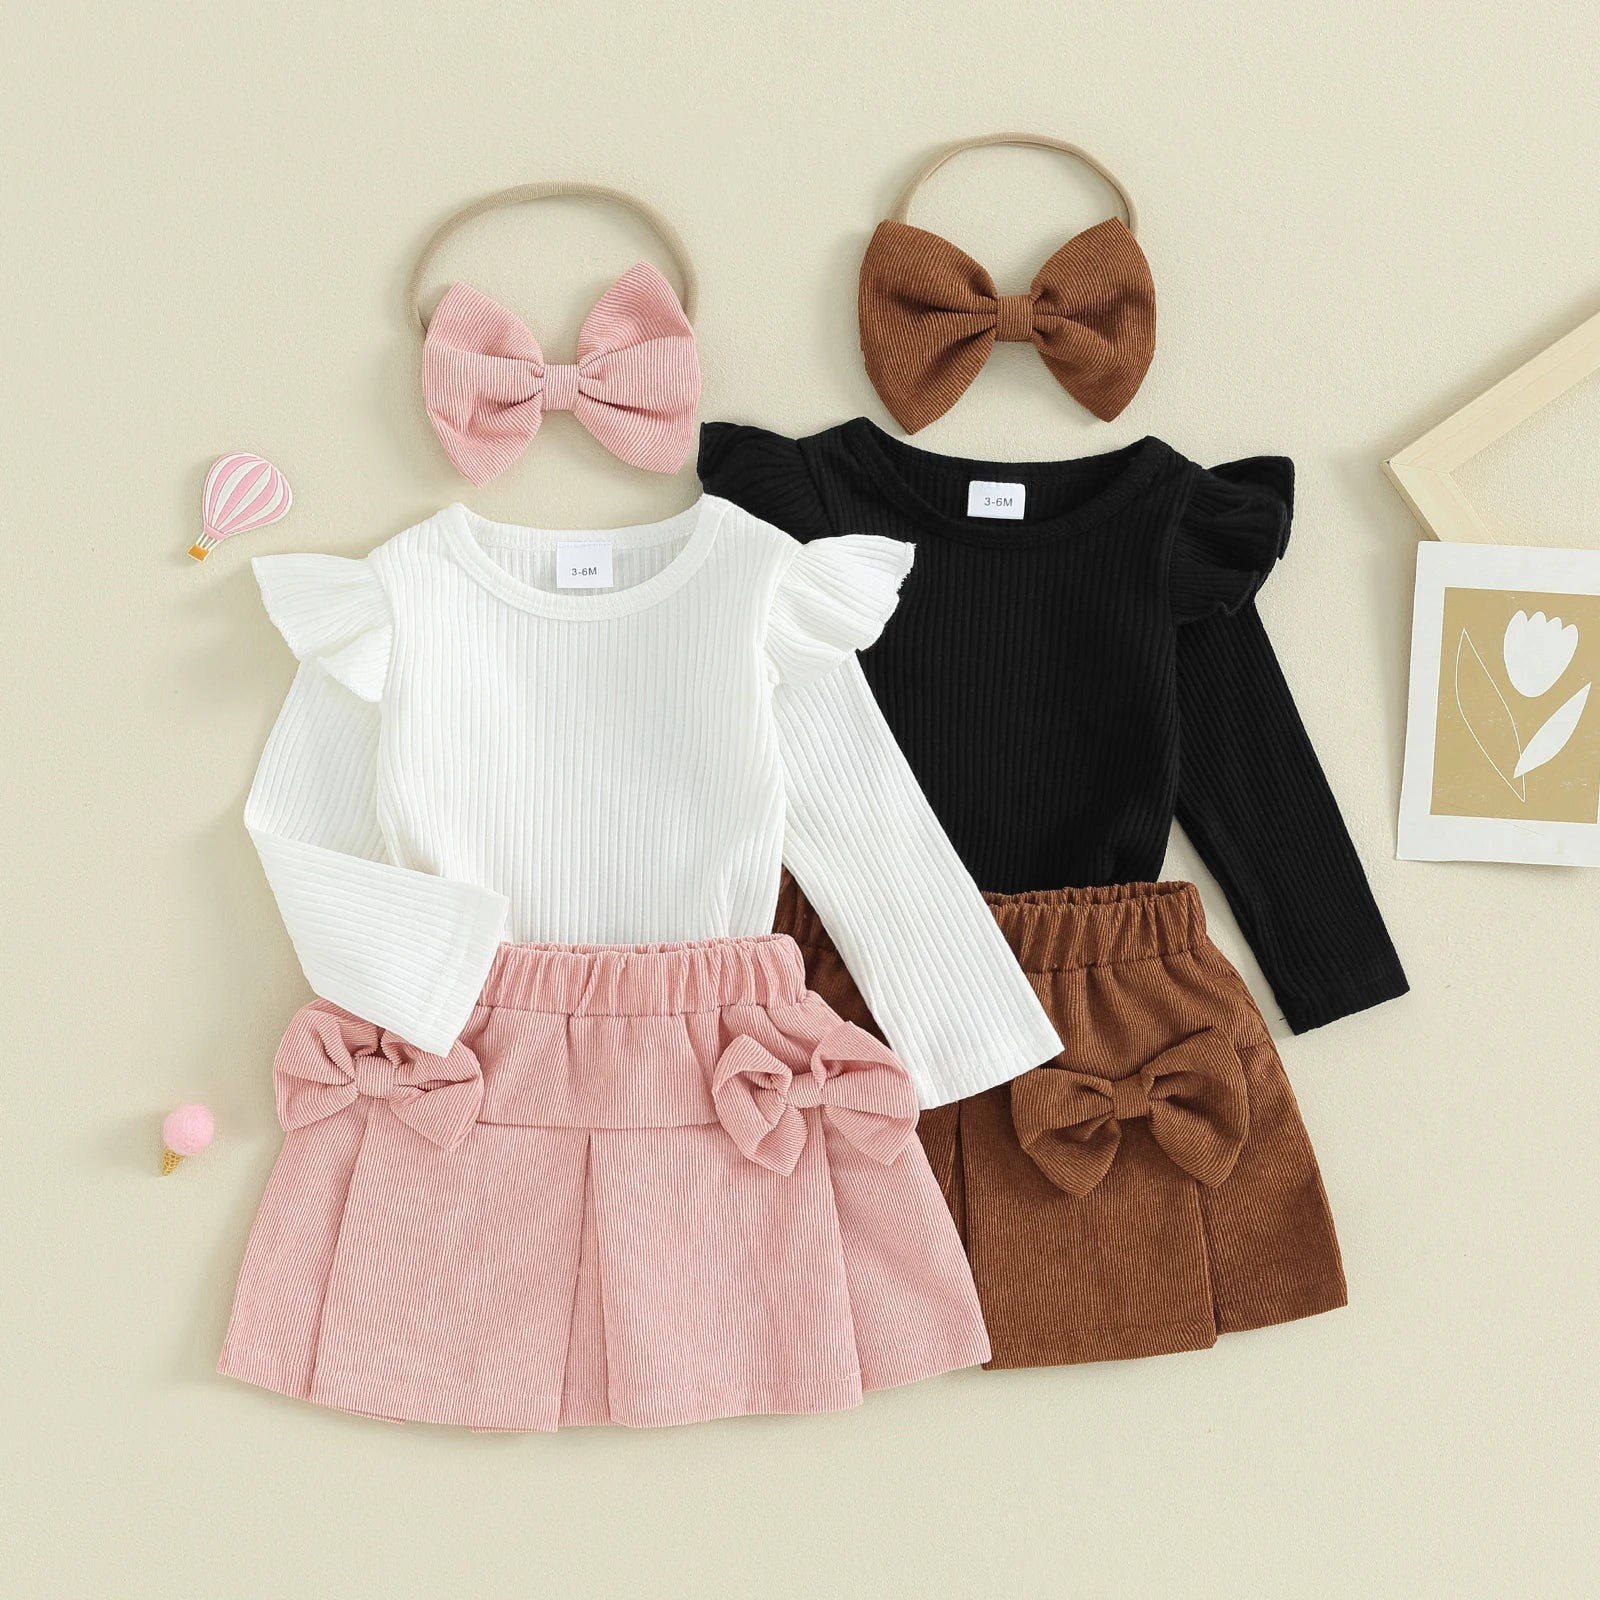 Mini Fashion™ - Oberteil-Rock-Kombination mit Haarband Weiß-rosa / 74 (6-9 Monate) | Pädagogisches Holzspielzeug von Mein Kleines Baby